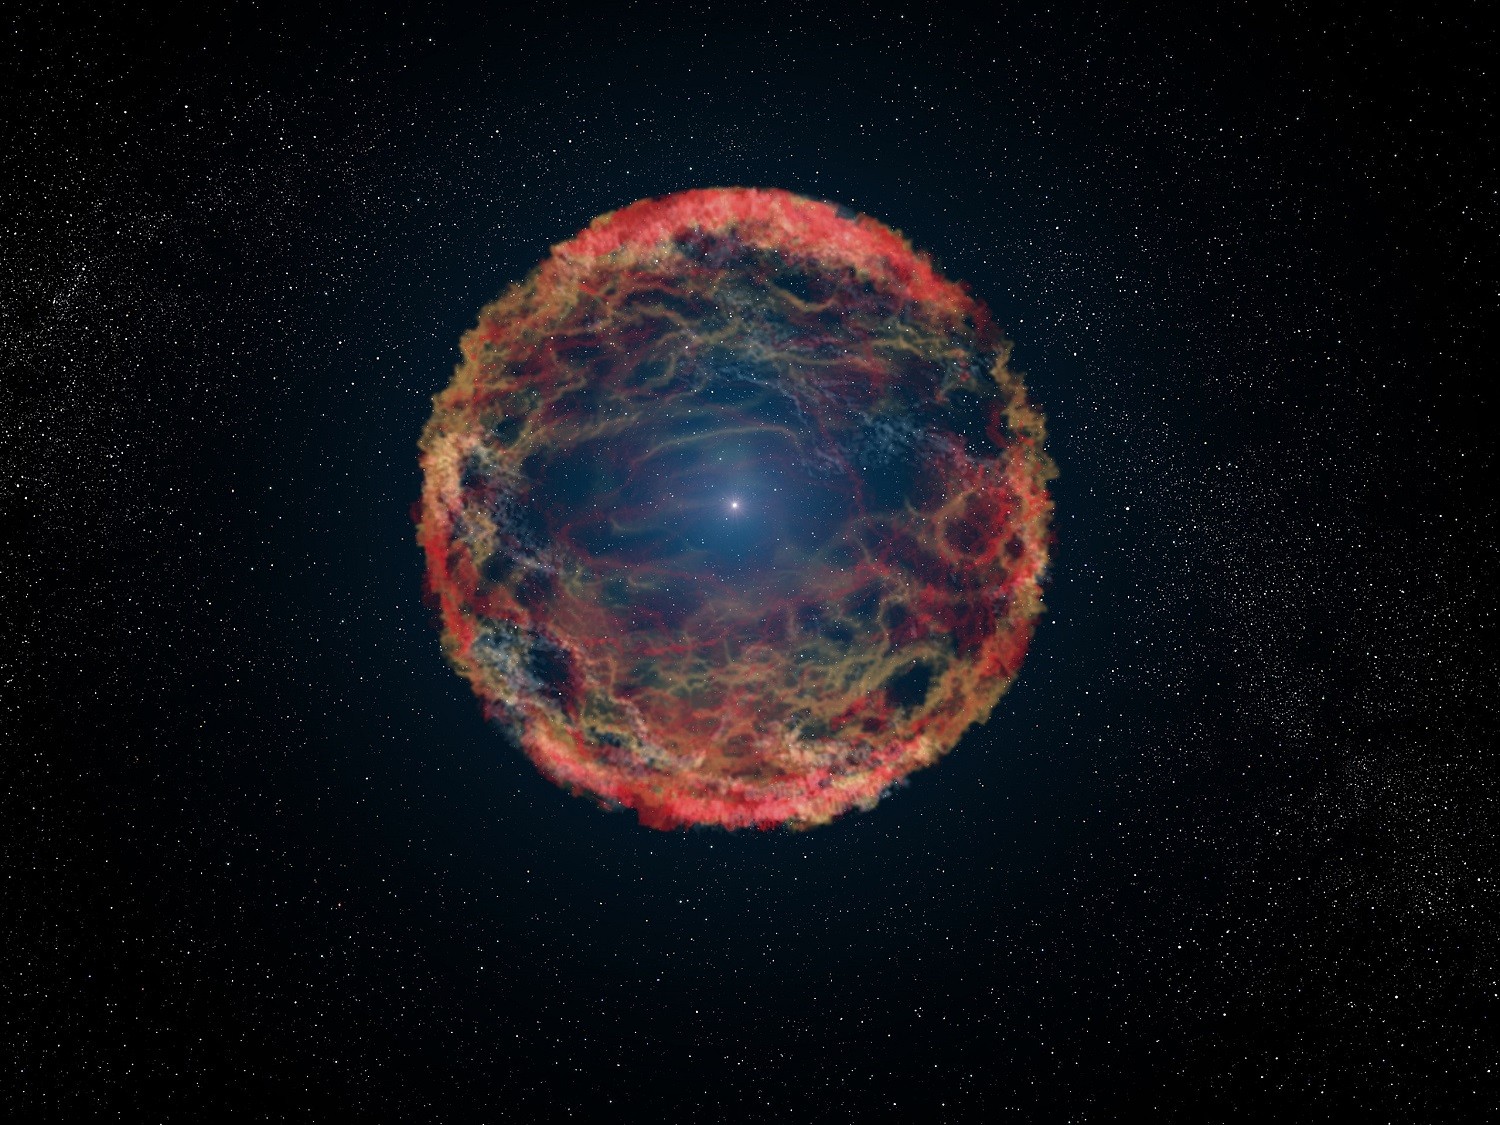 1800 lat temu astronomowie zauważyli potężną eksplozję. Teraz supernowa została uwieczniona ze szczegółami